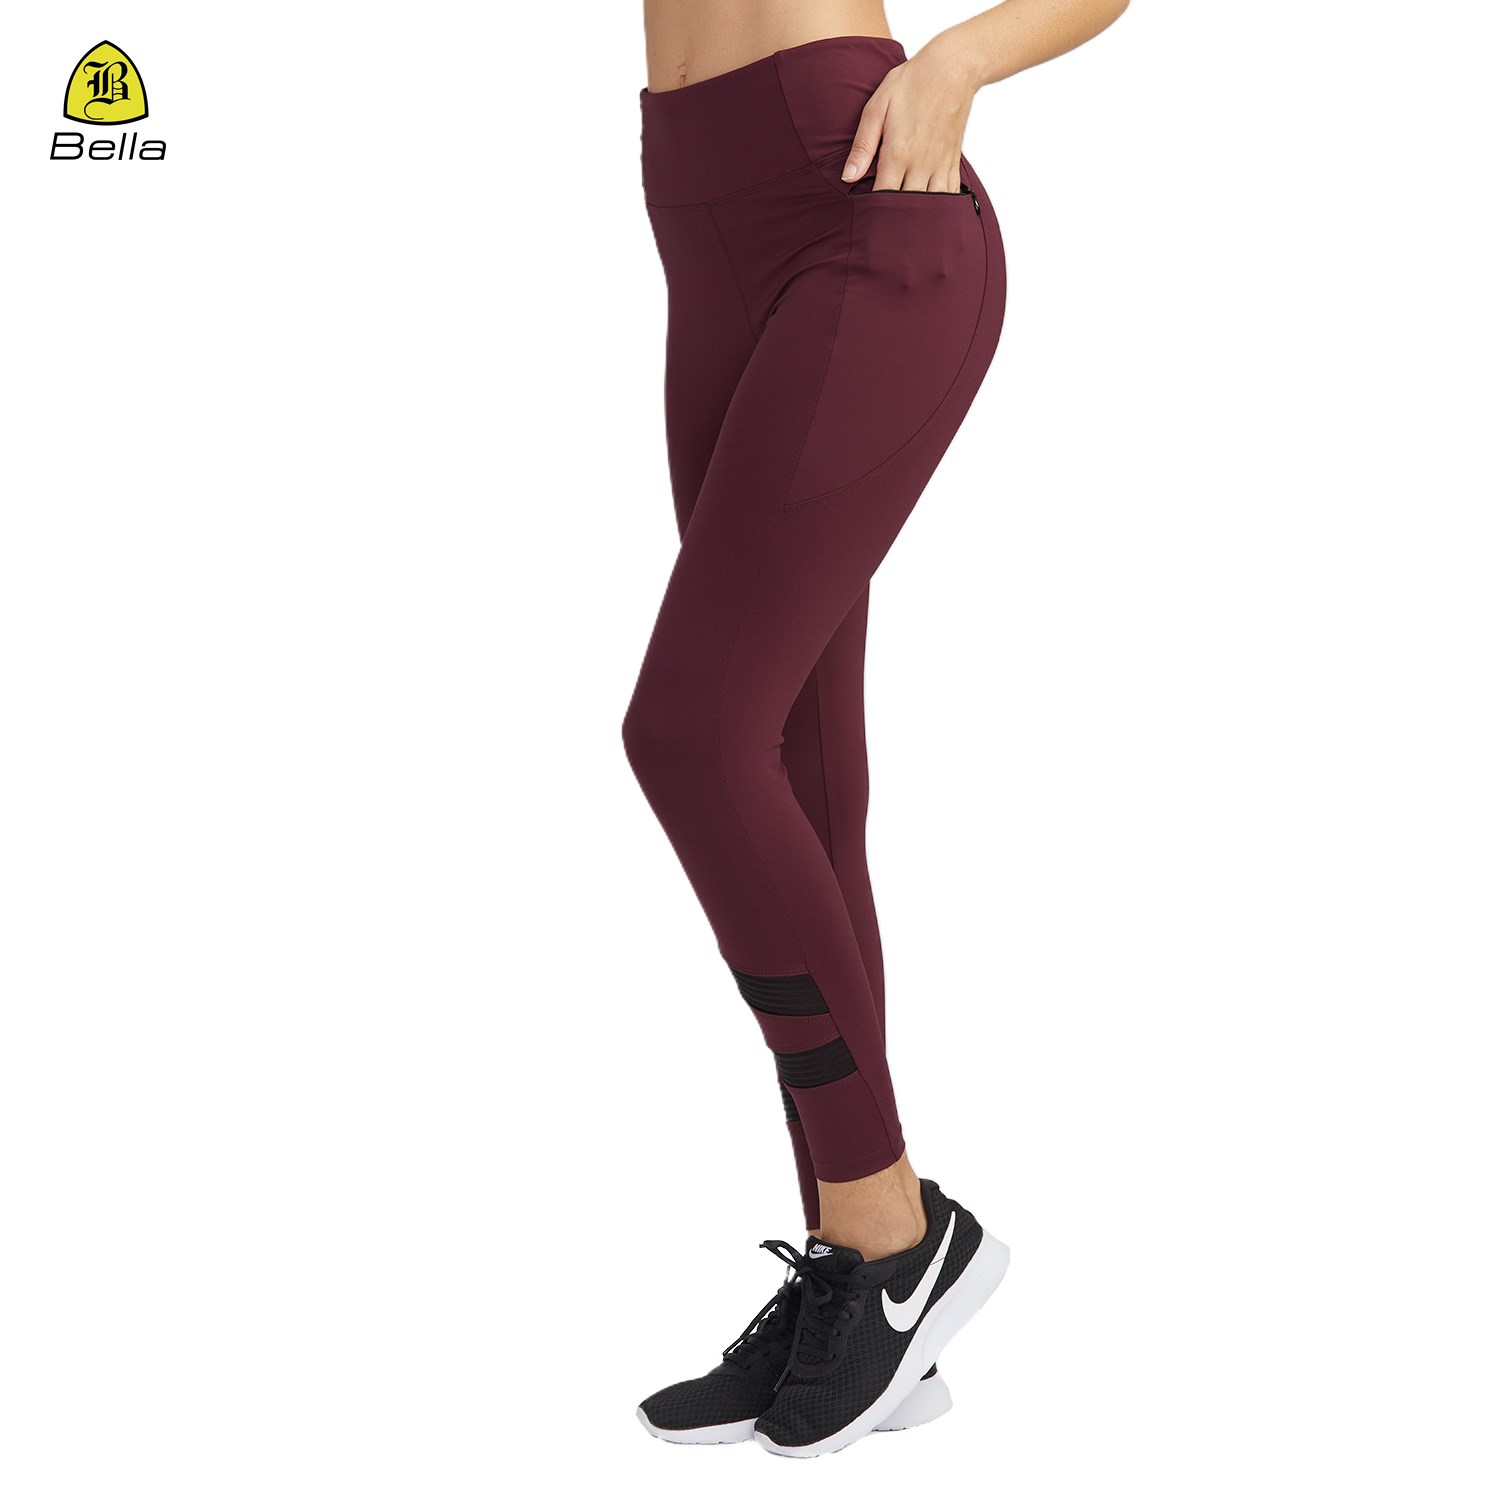 Yoga-Strumpfhose mit hoher Taille und Bauchkontrolle, Workout-Leggings